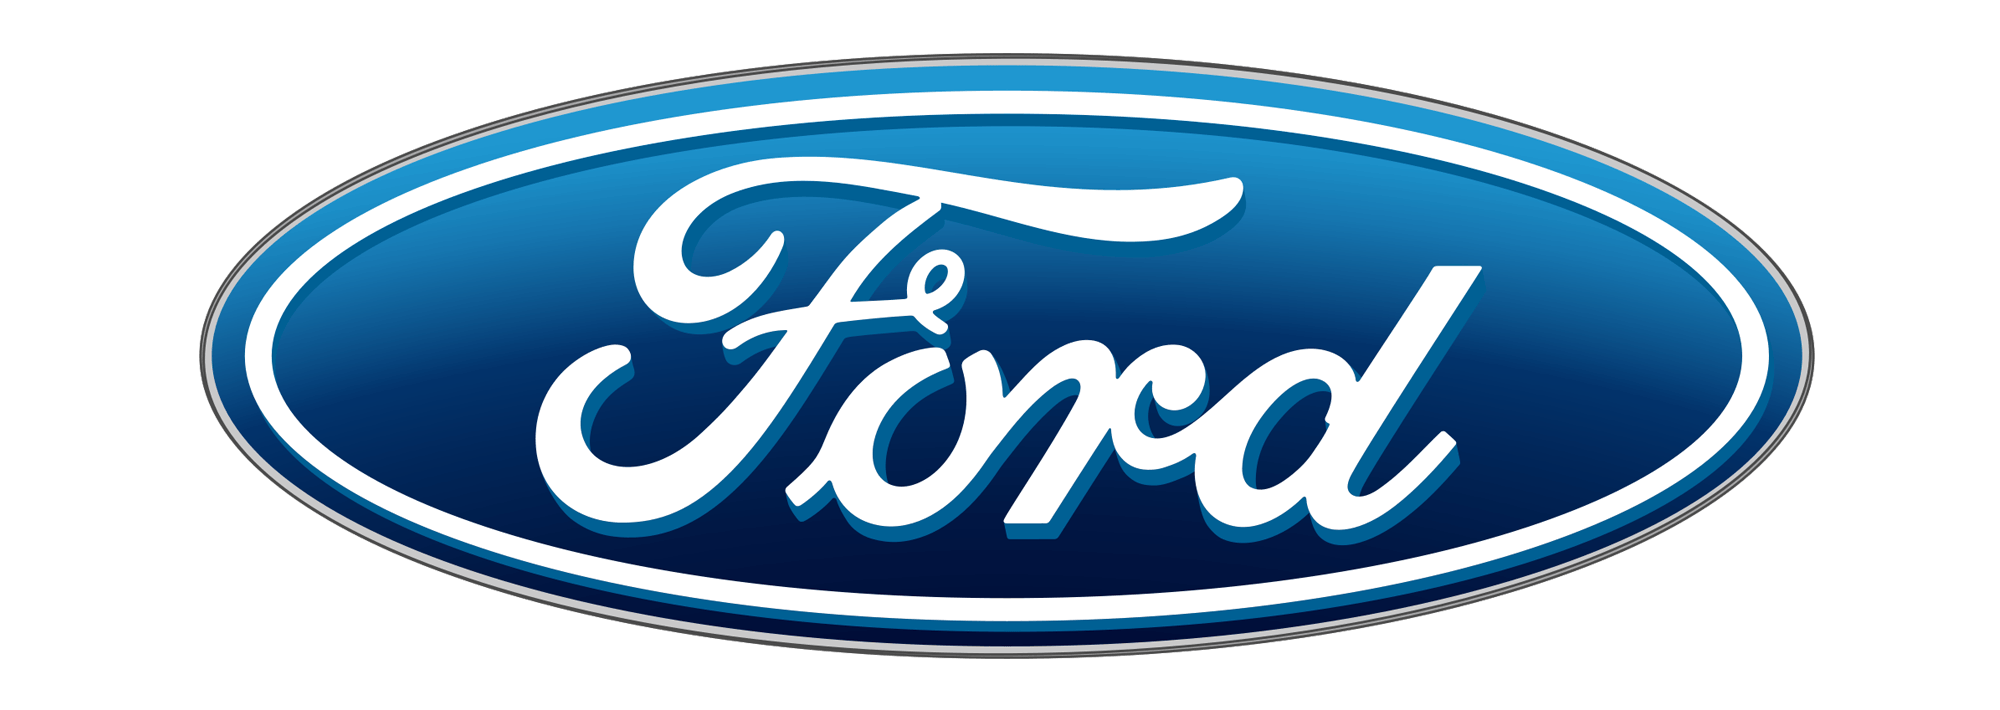 Le Logo - Le logo Ford | Les marques de voitures